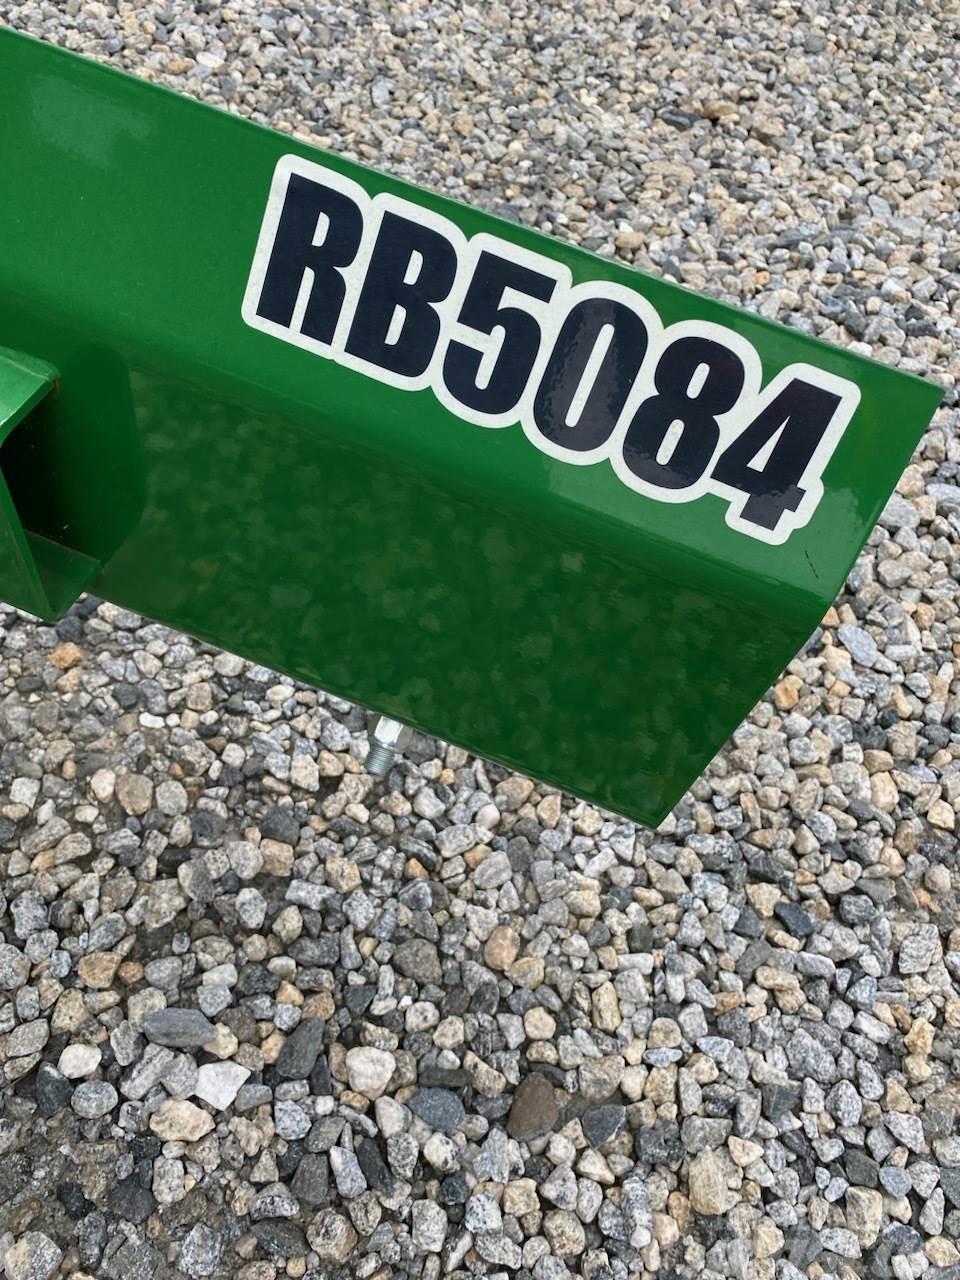 John Deere RB5084 Kar küreme biçaklari